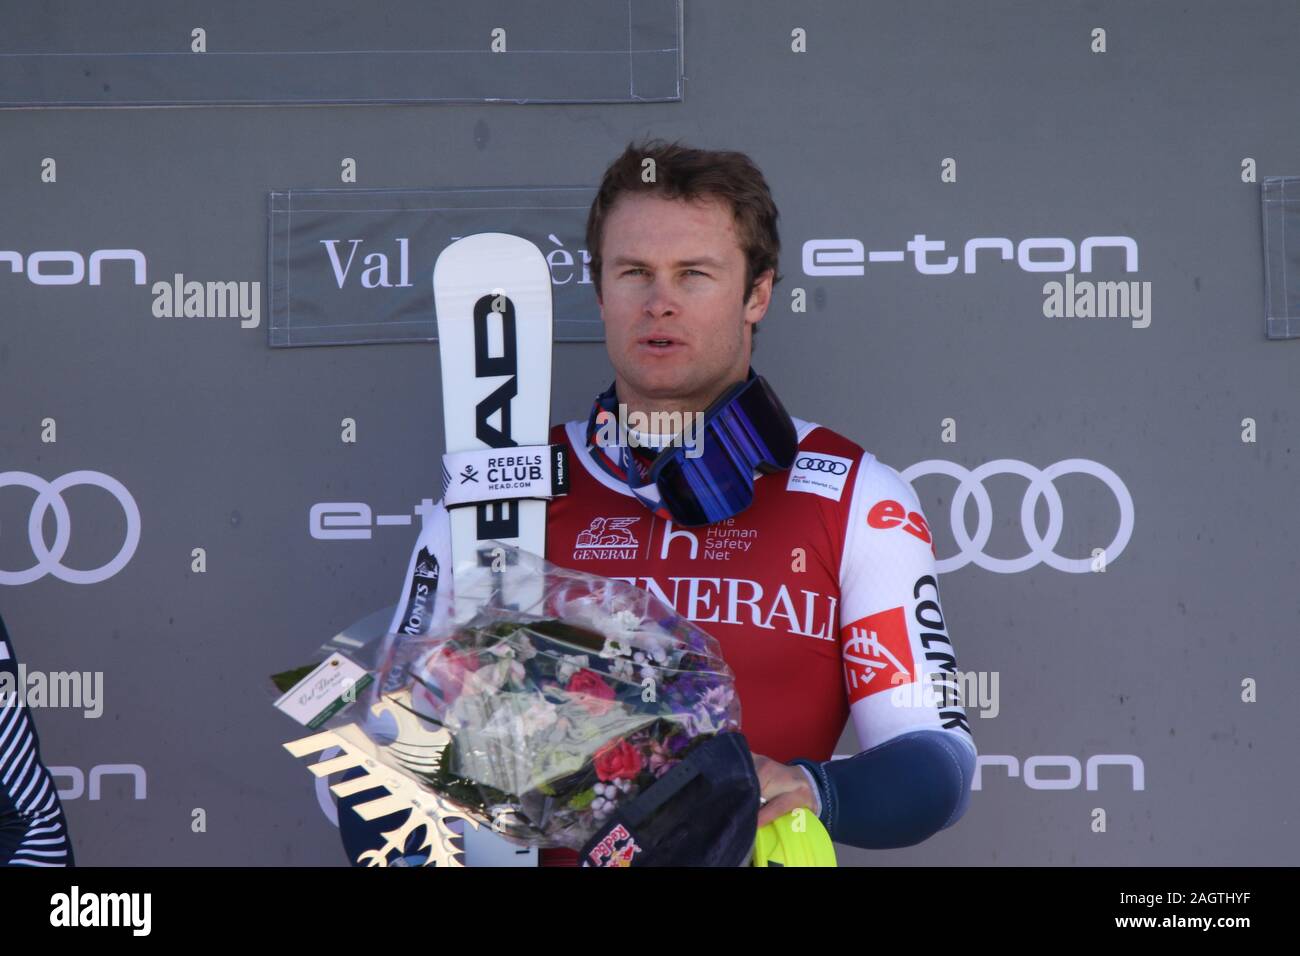 Alexis Pinturault sciatore alpino di Courchevel Francia sul podio in Val d'Isere Audi FIS Ski World Cup 2019 Foto Stock